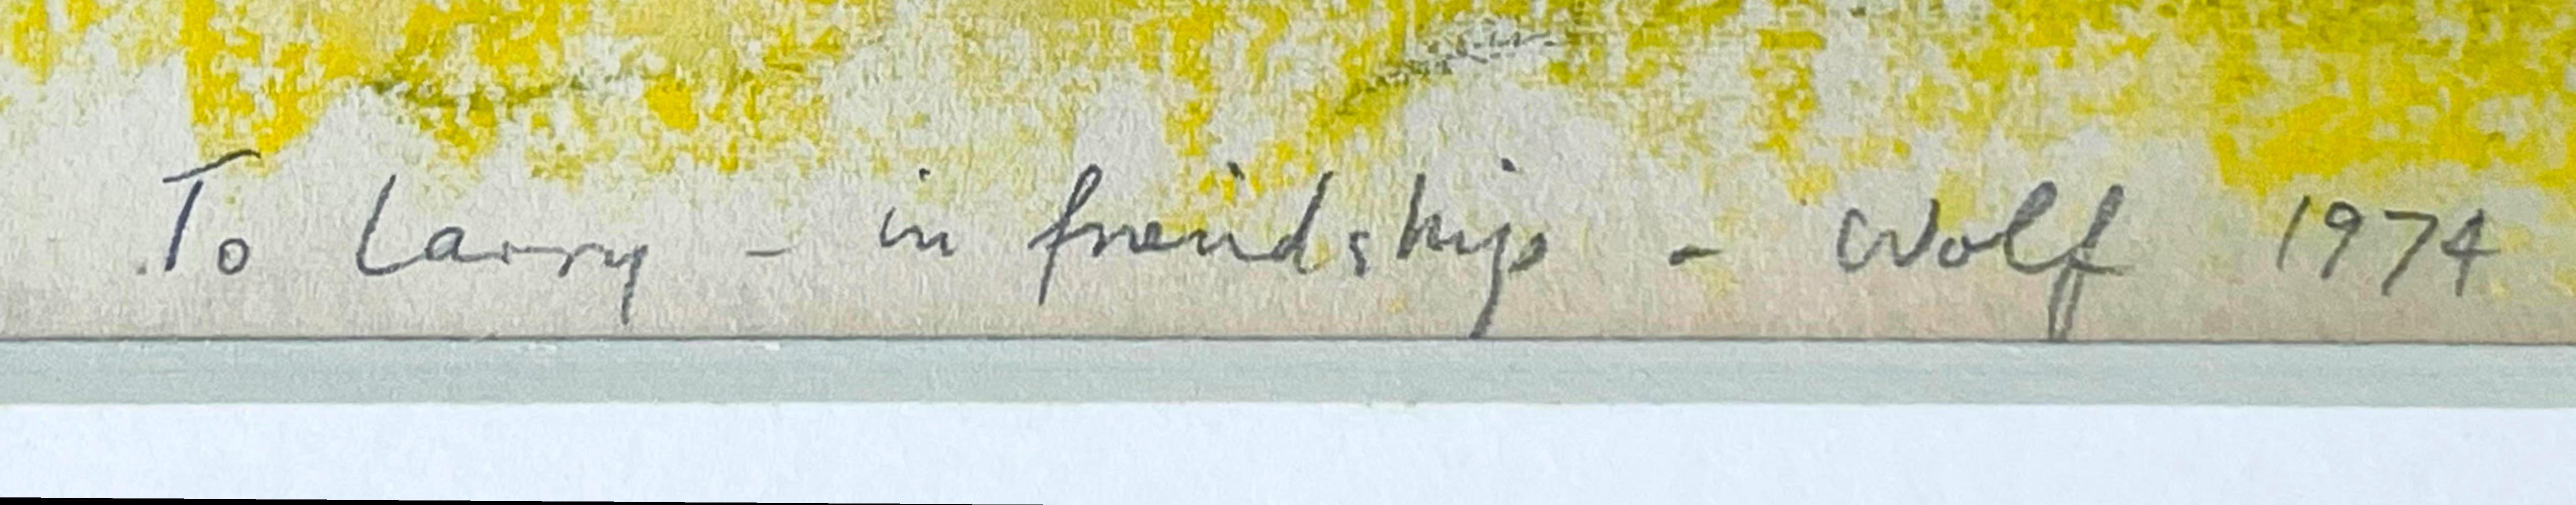 WOLFS Kahn
Secret Meadow (signé deux fois avec une inscription personnelle unique à un critique d'art renommé, avec une lettre de provenance), 1974
Pastel sur papier - signé deux fois et inscrit à la main,  accompagné d'une lettre de provenance